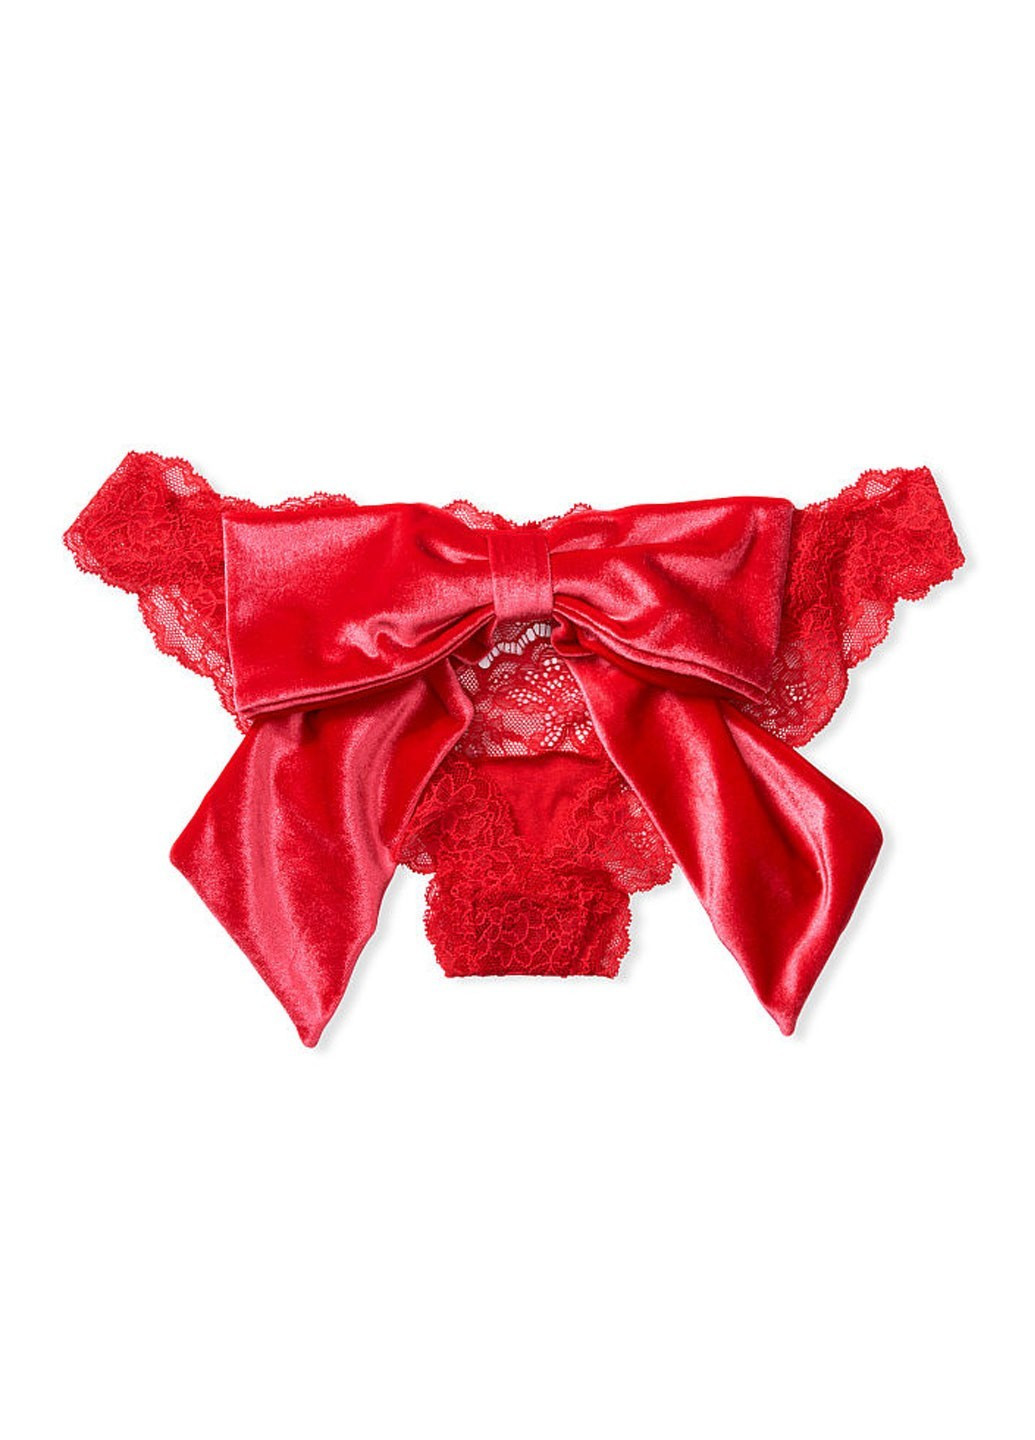 Трусы Victoria's Secret слип однотонные красные откровенные полиамид